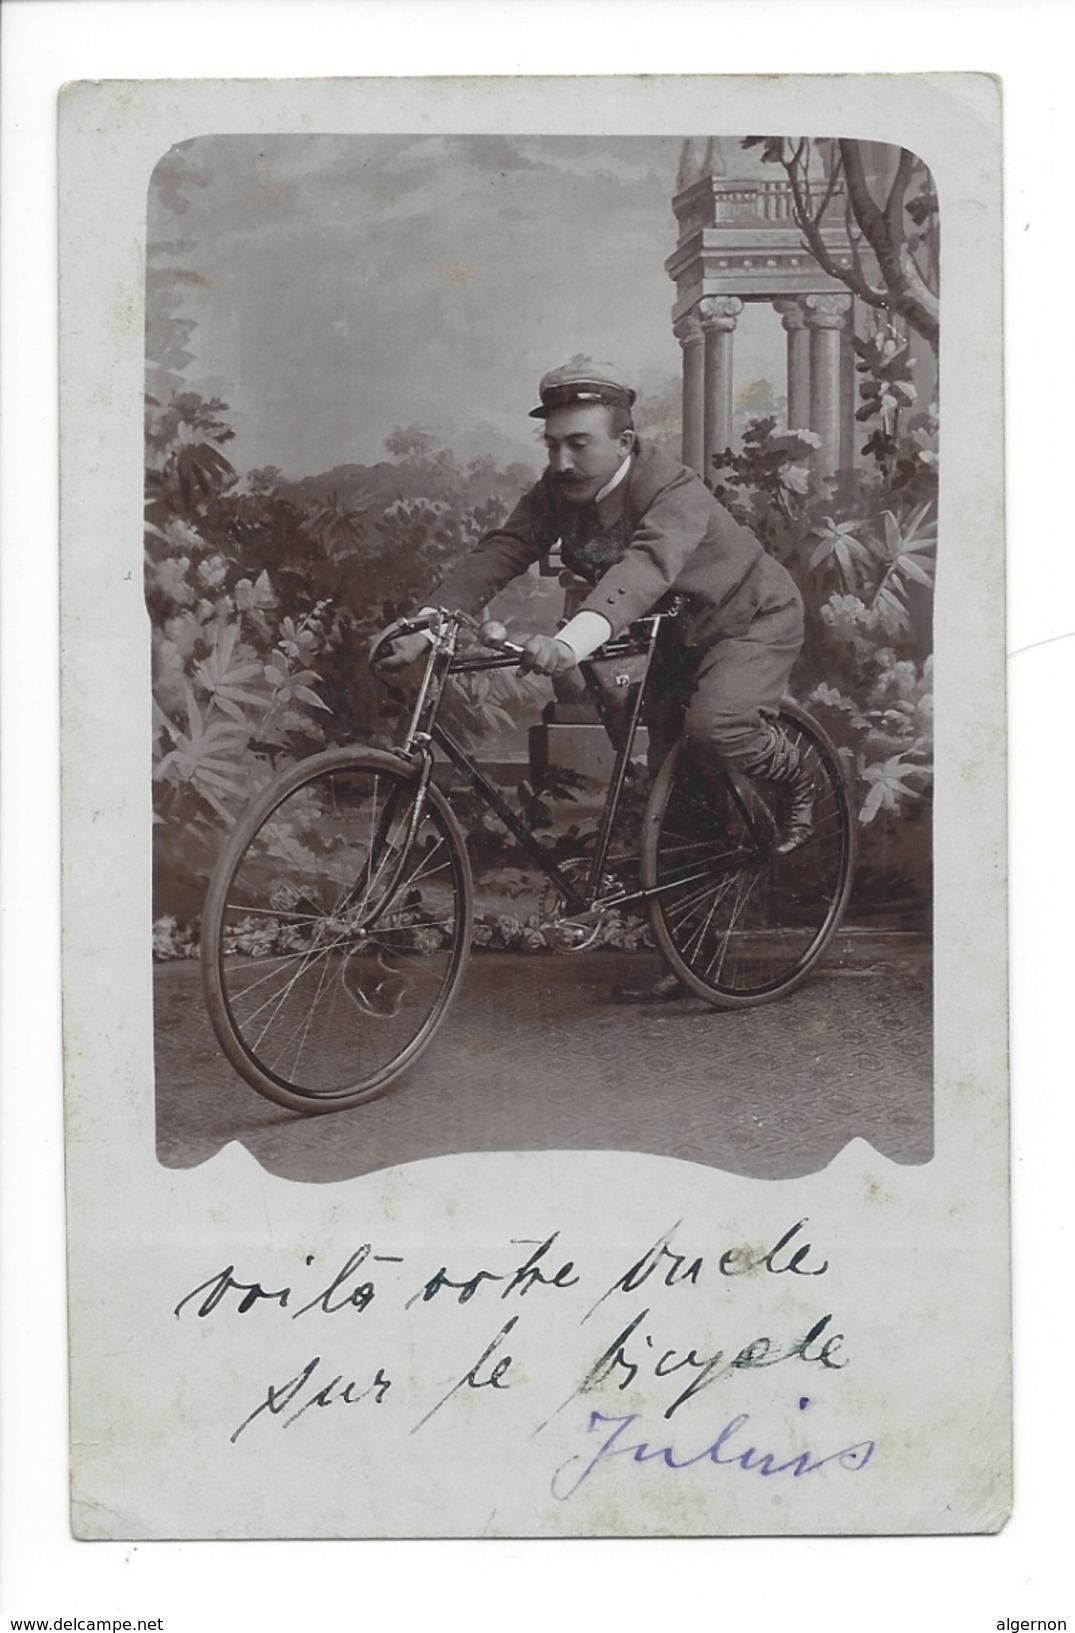 14890 - Carte Photo Vélo Voilà Votre Oncle à Bicyclette - Cyclisme